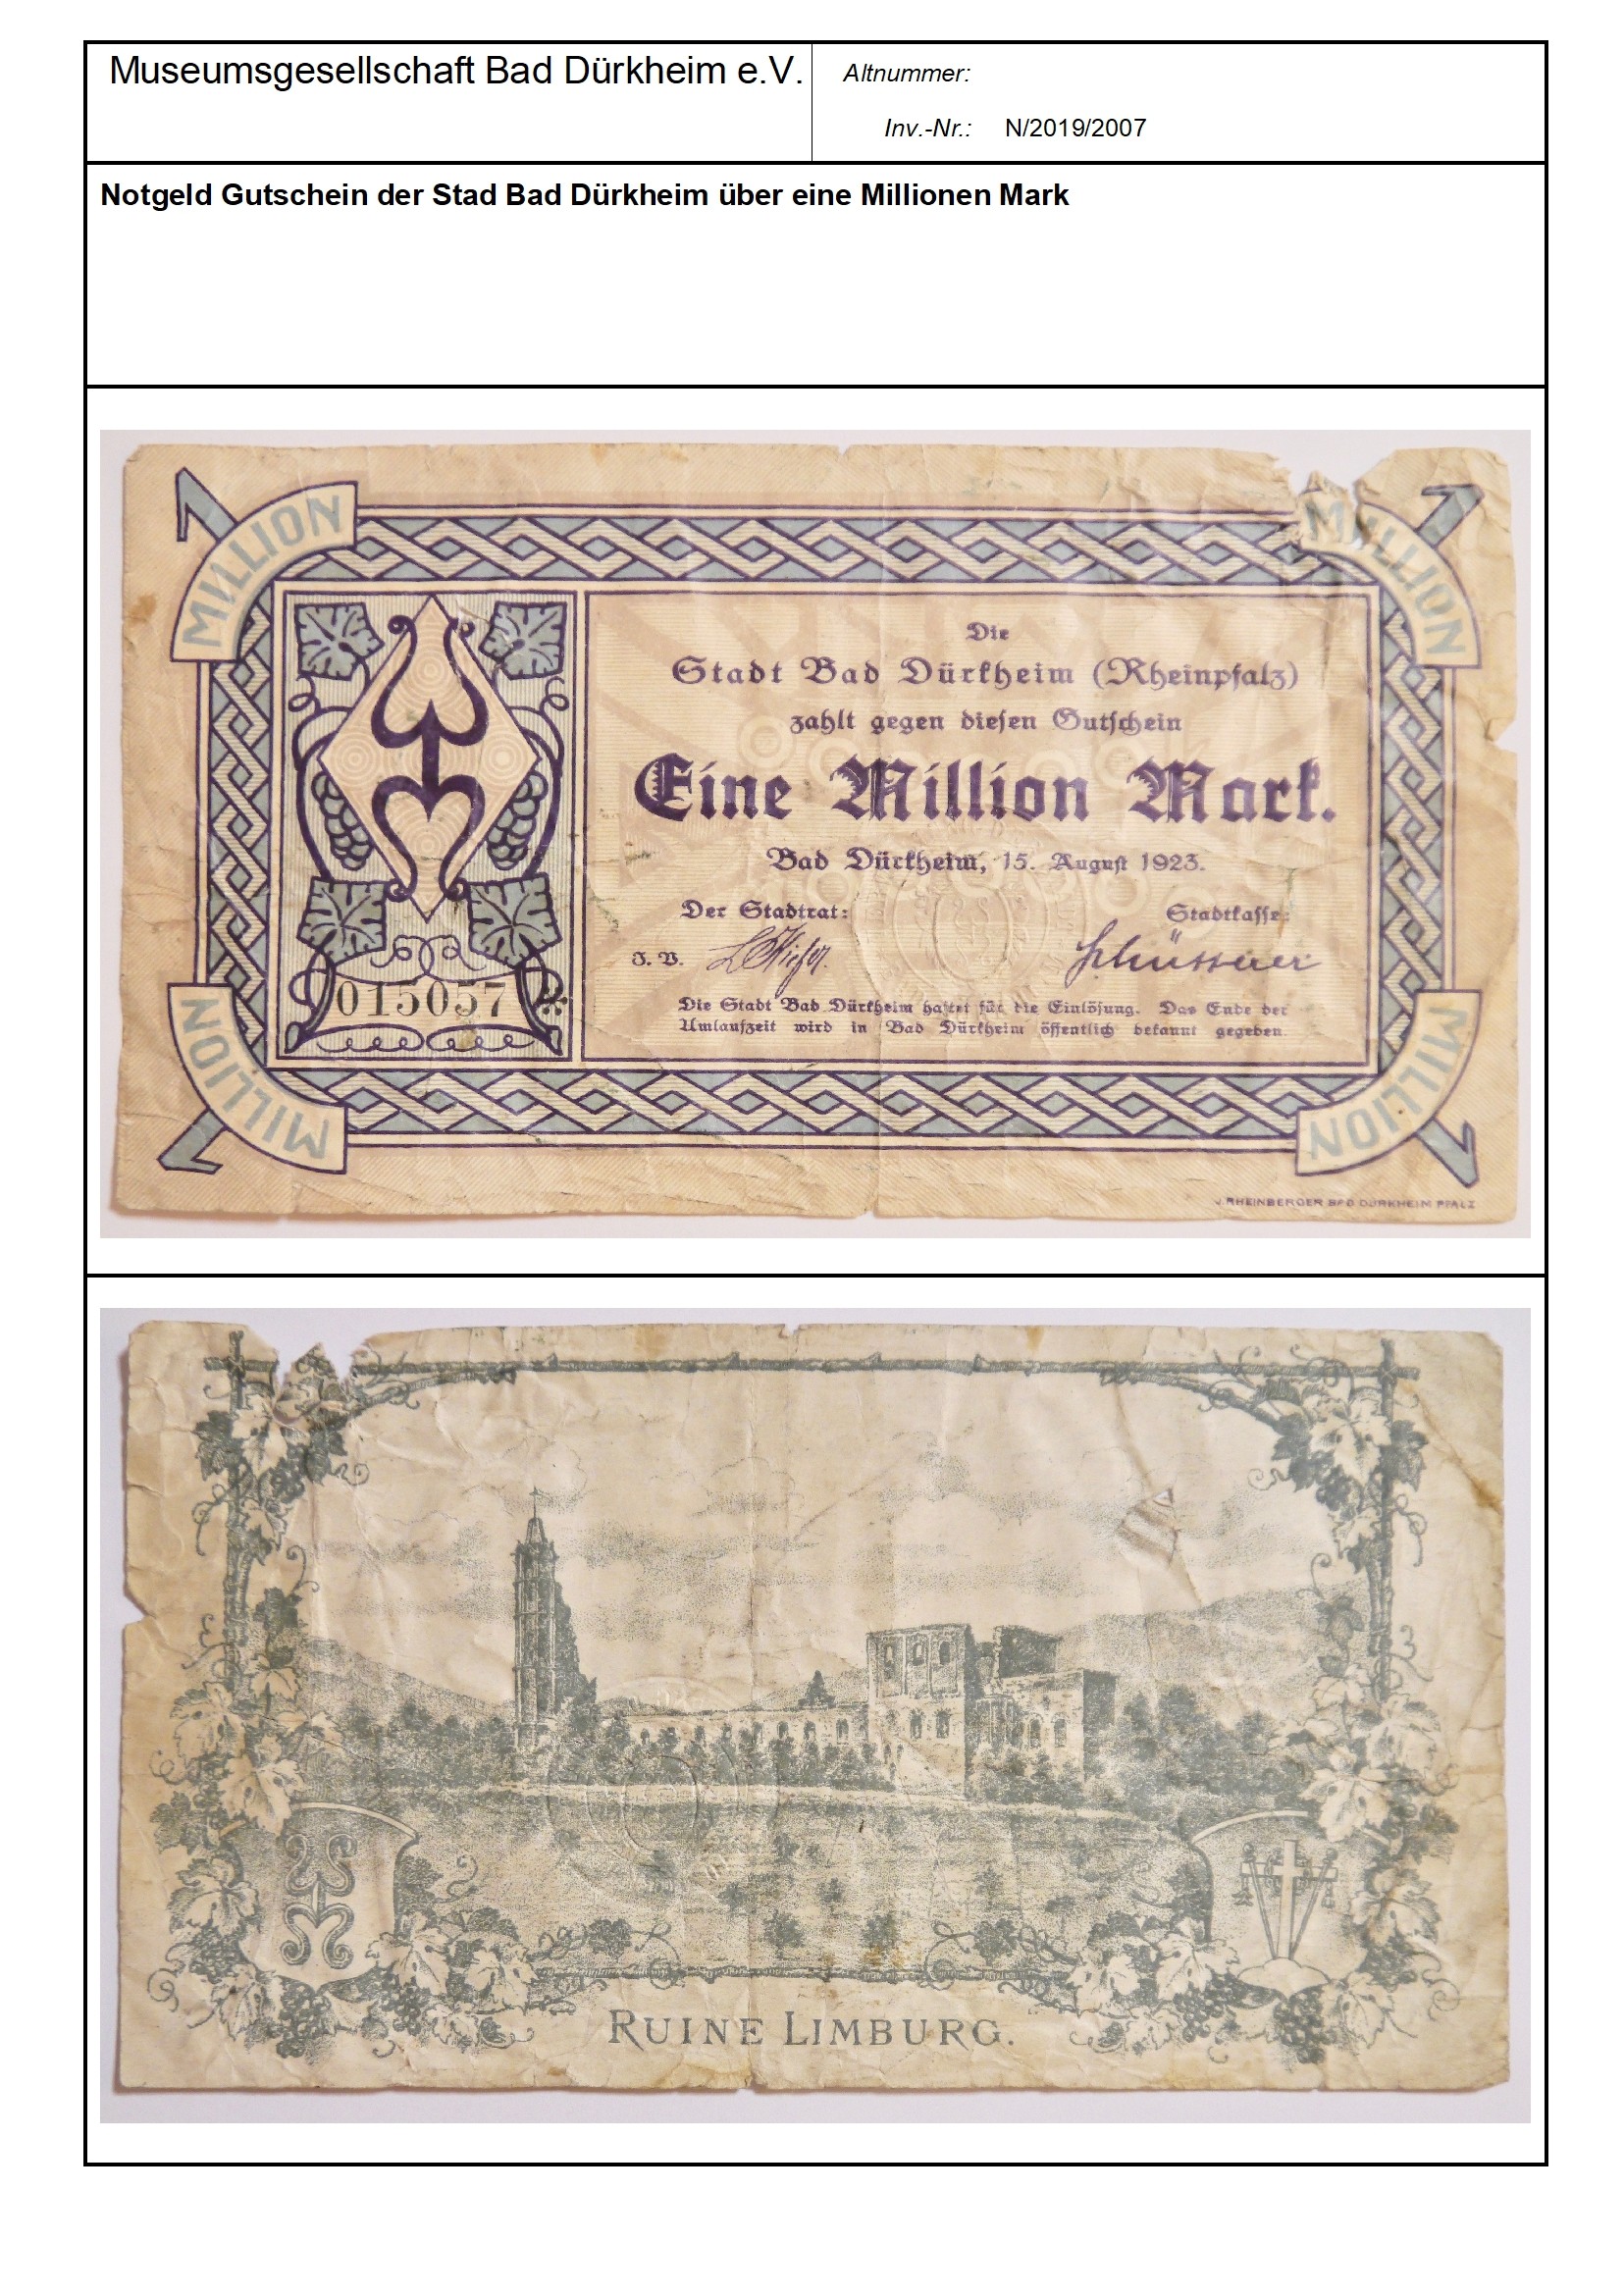 Notgeld Gutschein der Stad Bad Dürkheim über eine Millionen Mark
Serien-Nummer: 015057 (Museumsgesellschaft Bad Dürkheim e.V. CC BY-NC-SA)